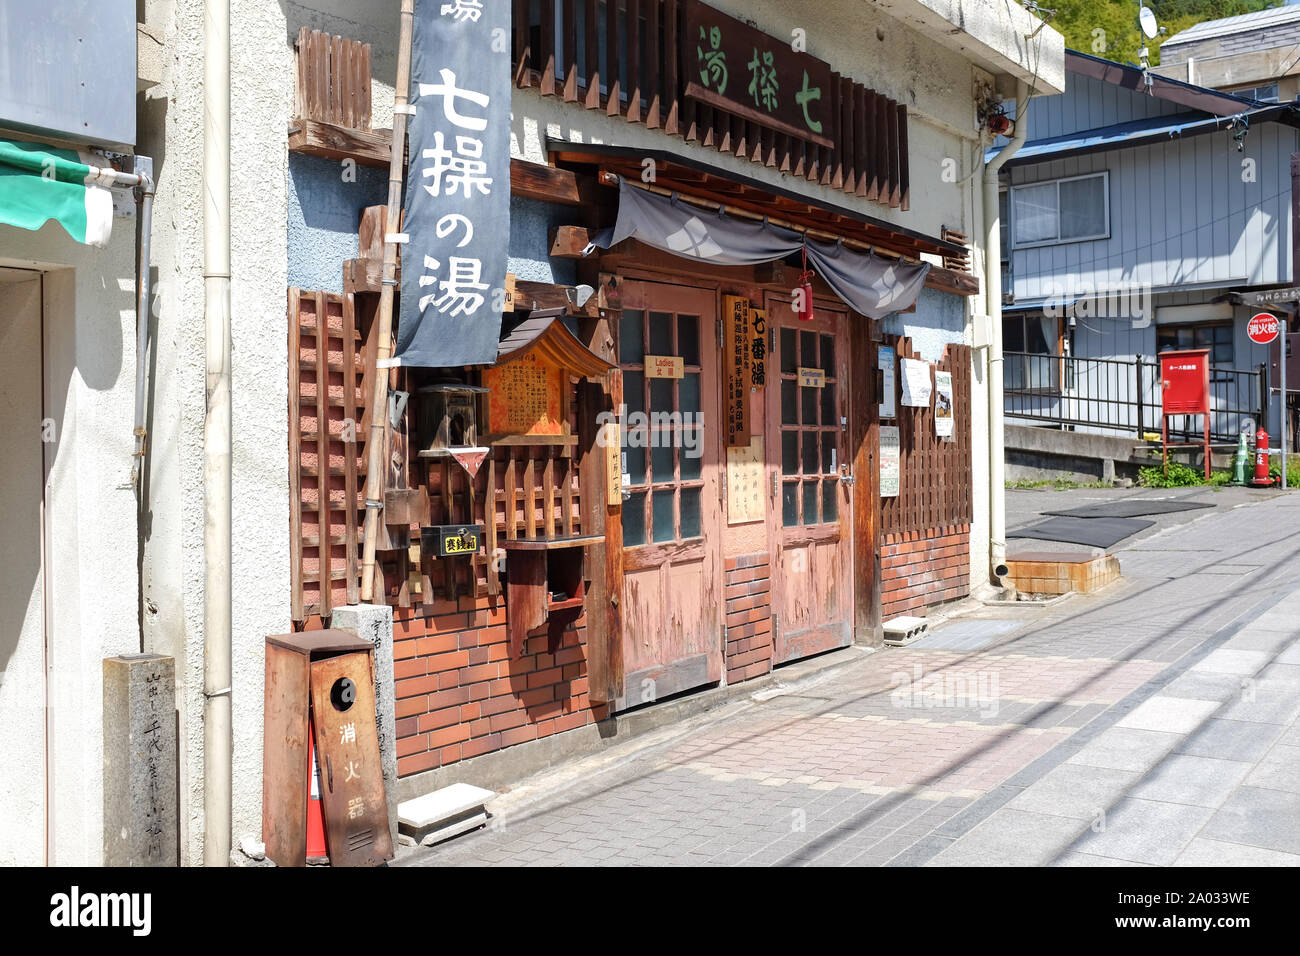 Japans onsen town, Shibu onsen, Nagano prefecture, japan, Stock Photo